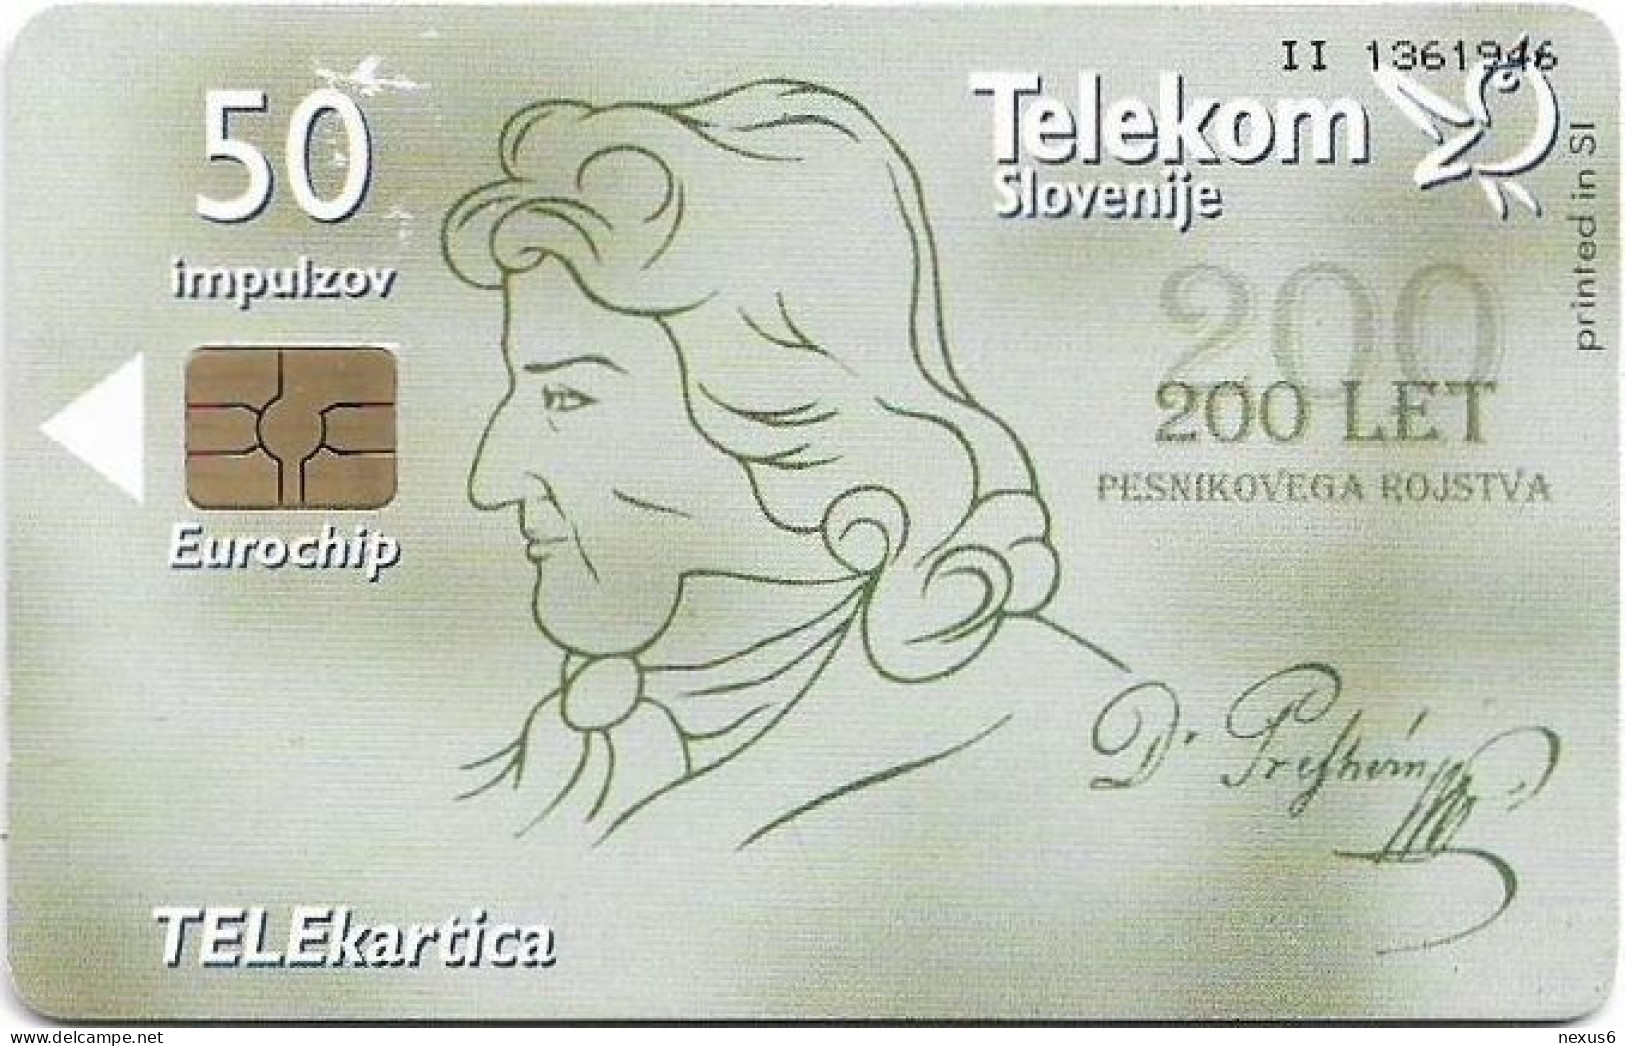 Slovenia - Telekom Slovenije - Poet France Prešeren - Let Pesnikovega Rojstva, Gem5 Red, 02.2001, 50Units, 4.975ex, Used - Slowenien